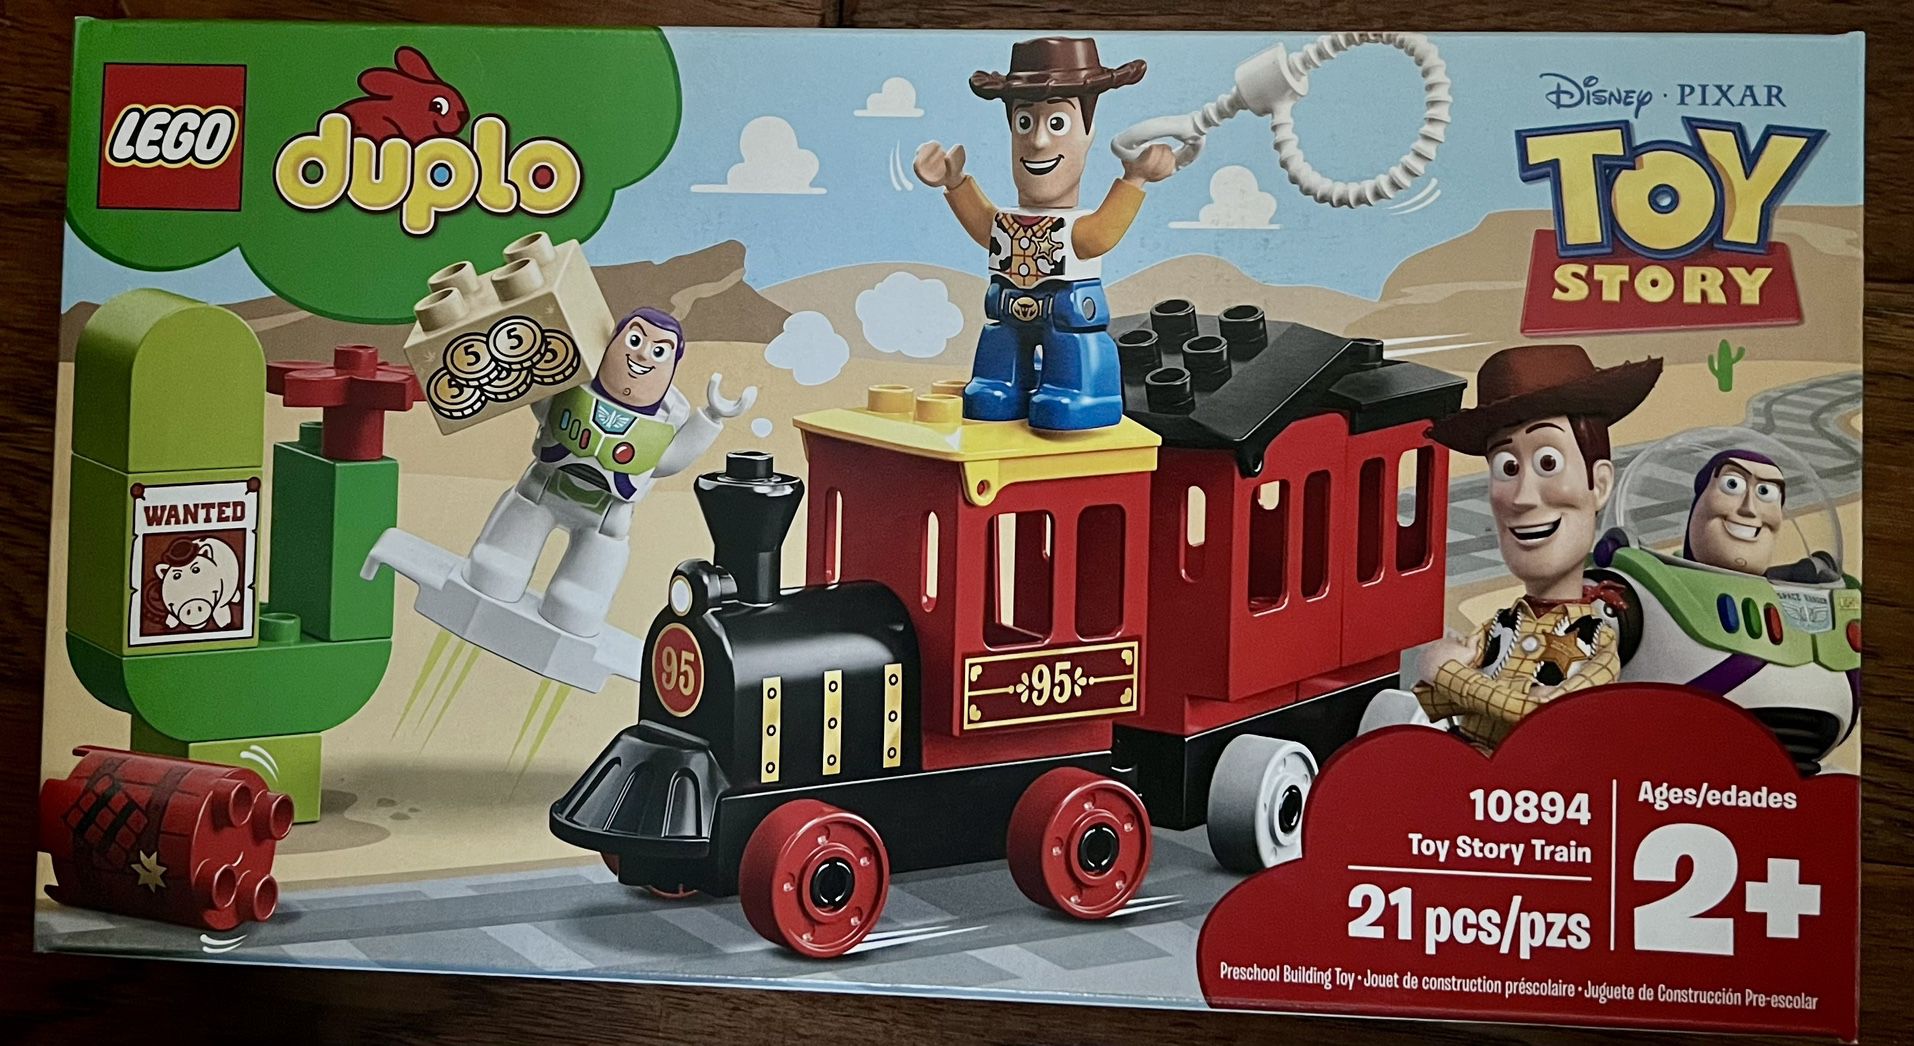 LEGO Duplo Toy Story Train (10894) - NEW Sealed - Woody Buzz Lightyear